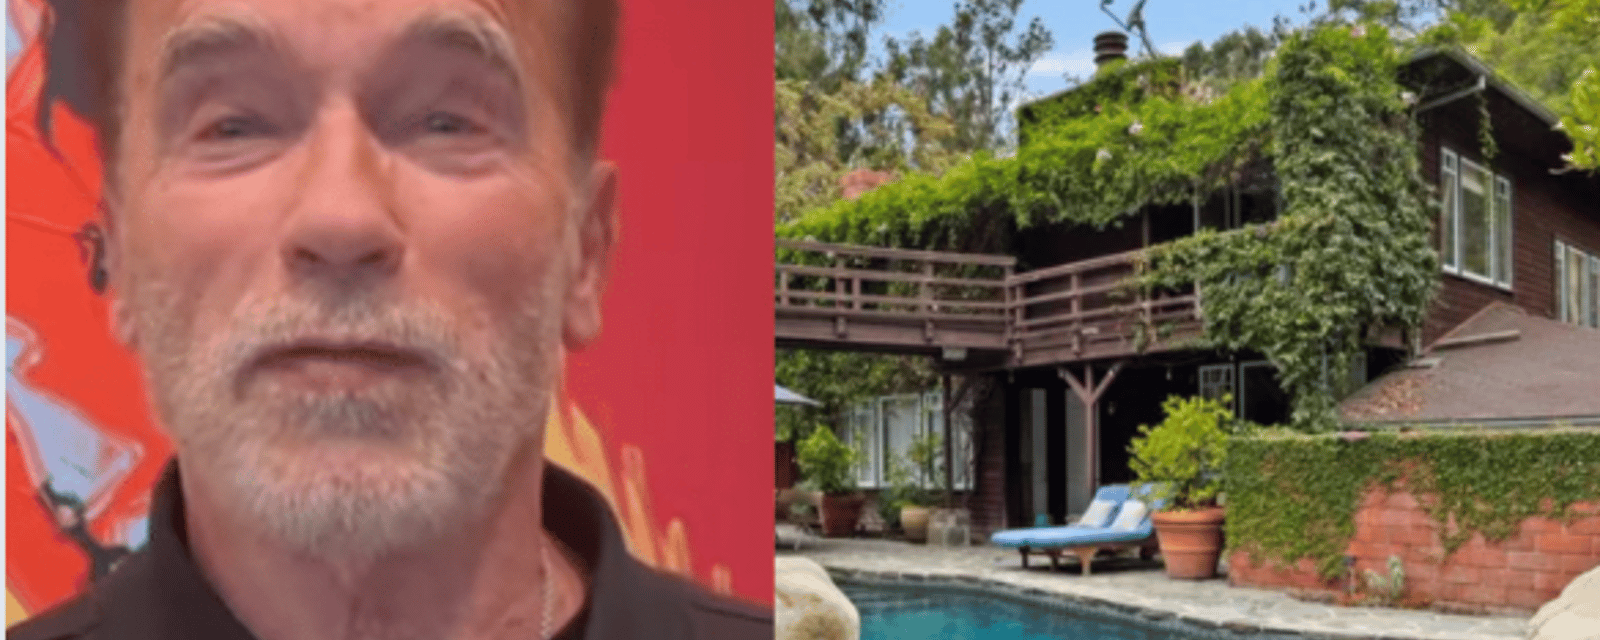 La somptueuse maison d'Arnold Schwarzenegger à Los Angeles vendue pour 11 millions de dollars